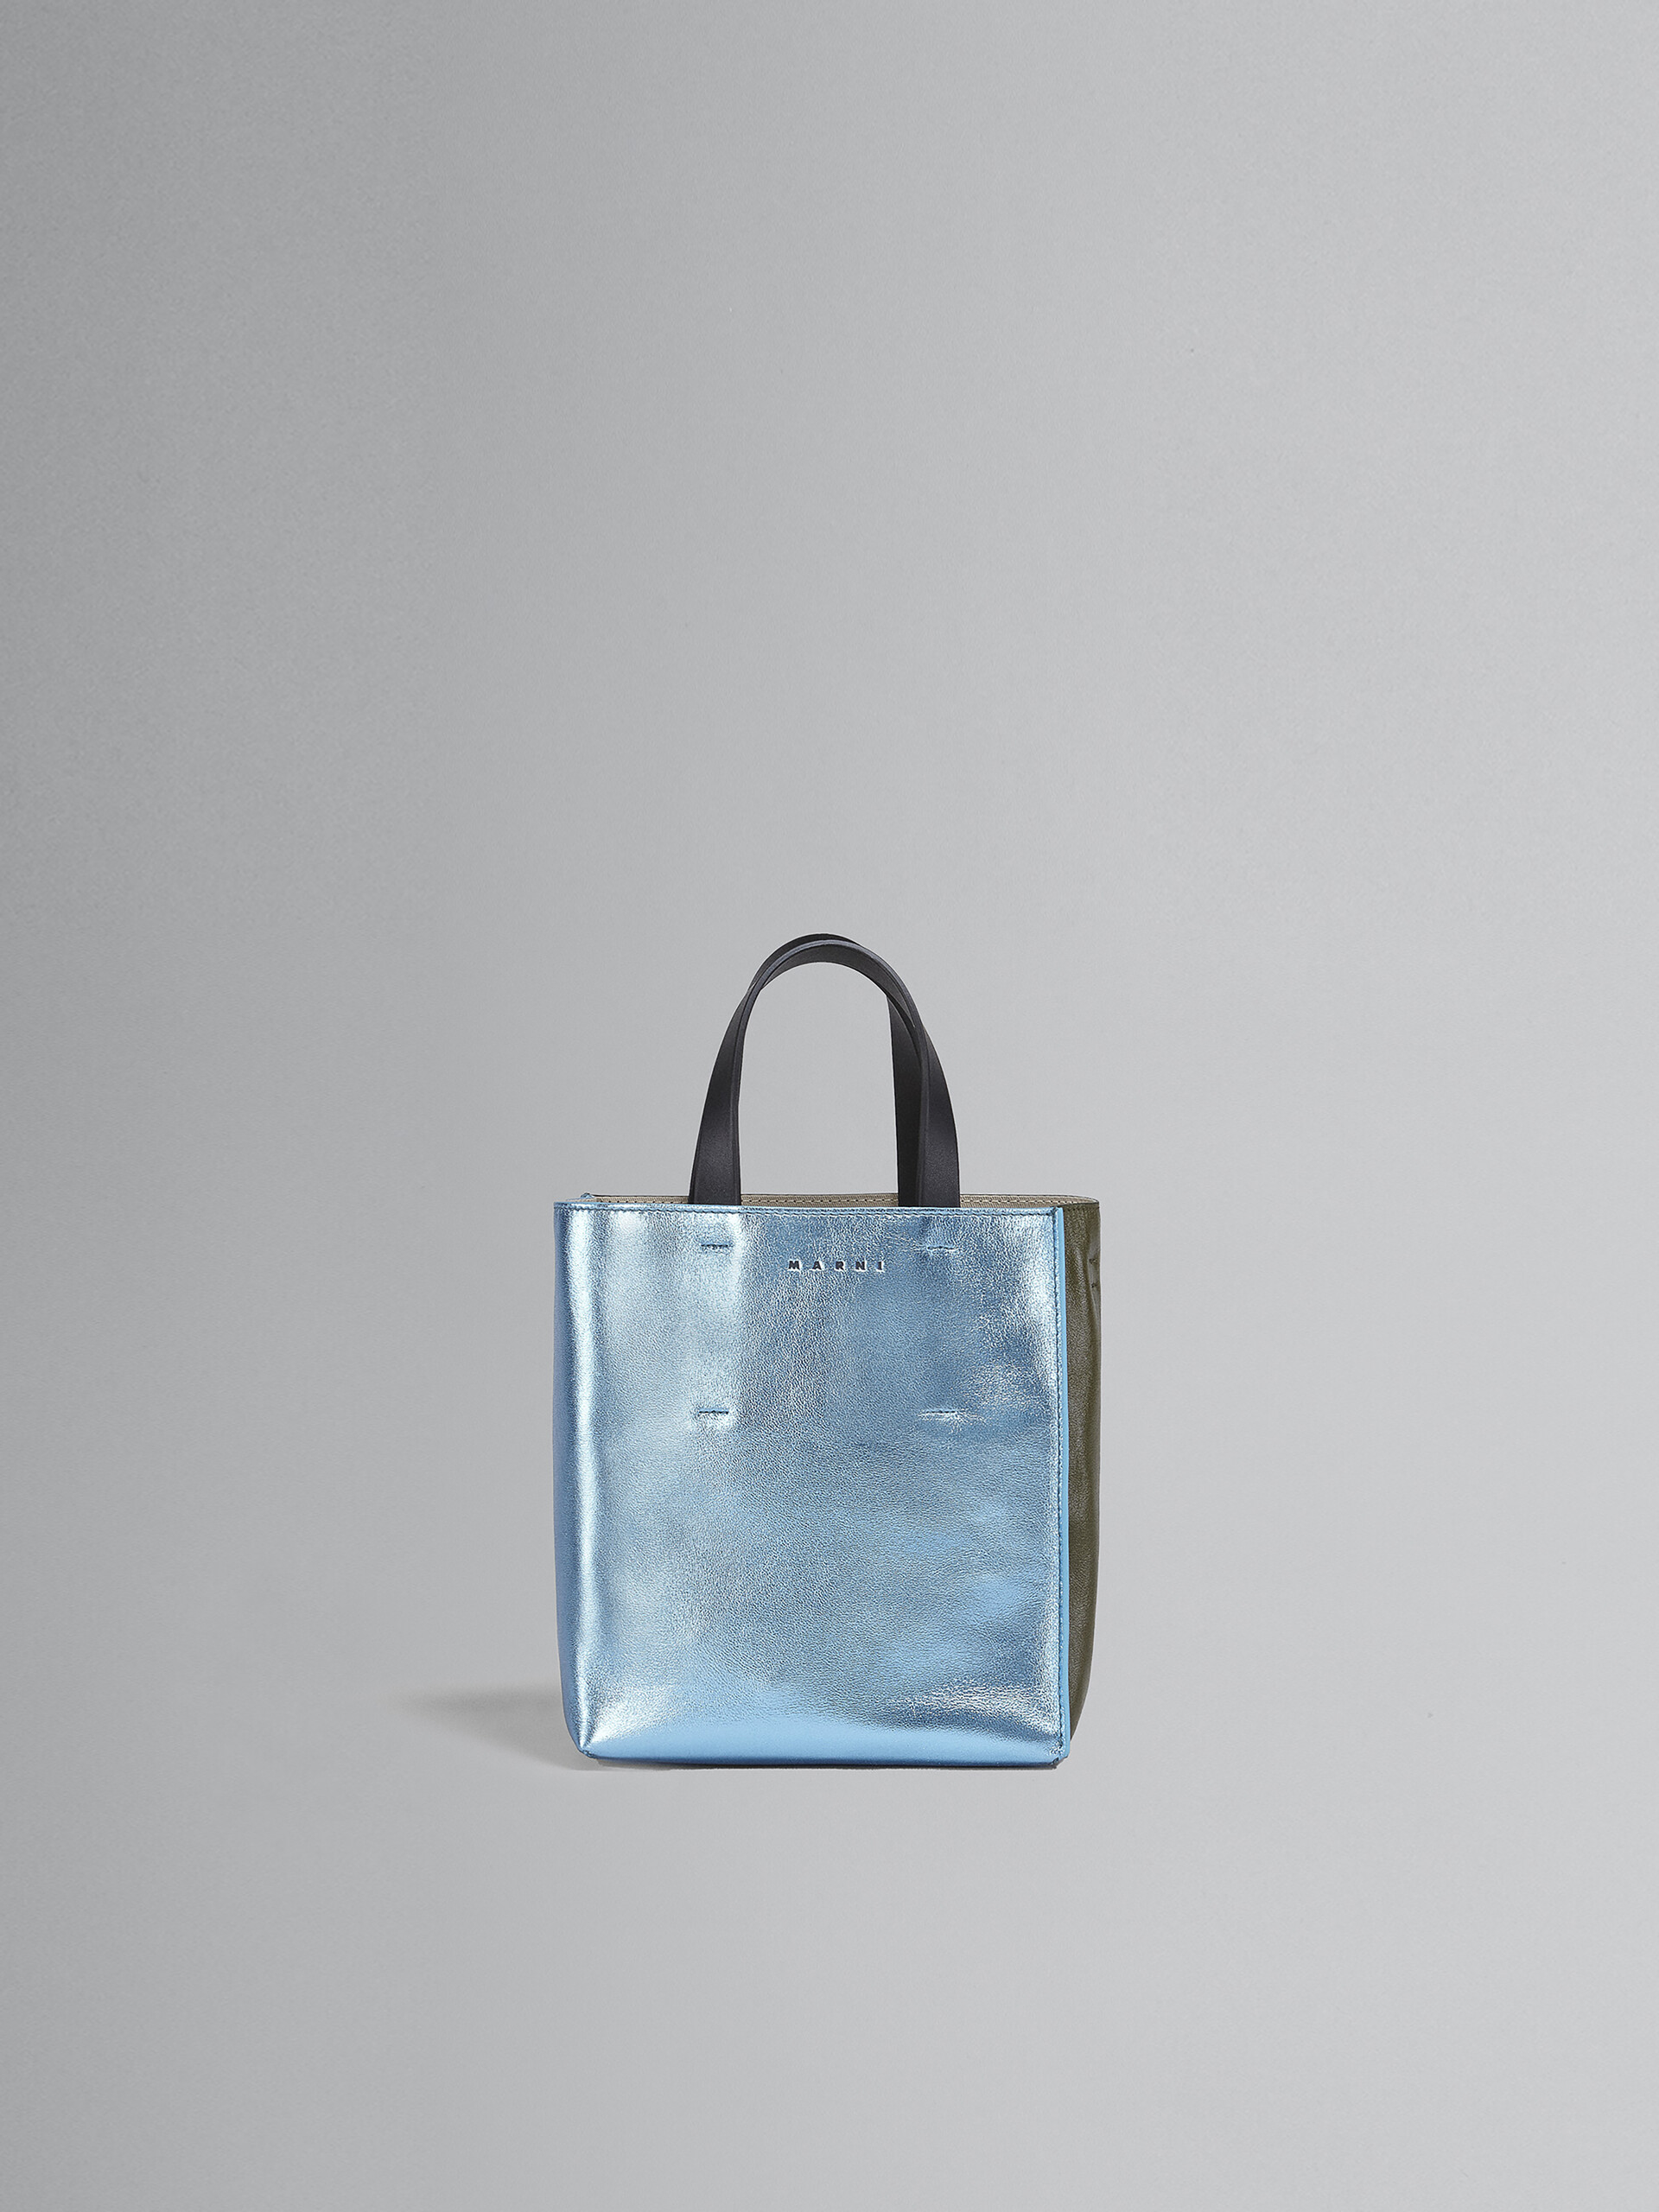 MUSEO Tasche aus blassblaugrünem und schwarzem Metallic-Leder - Shopper - Image 1